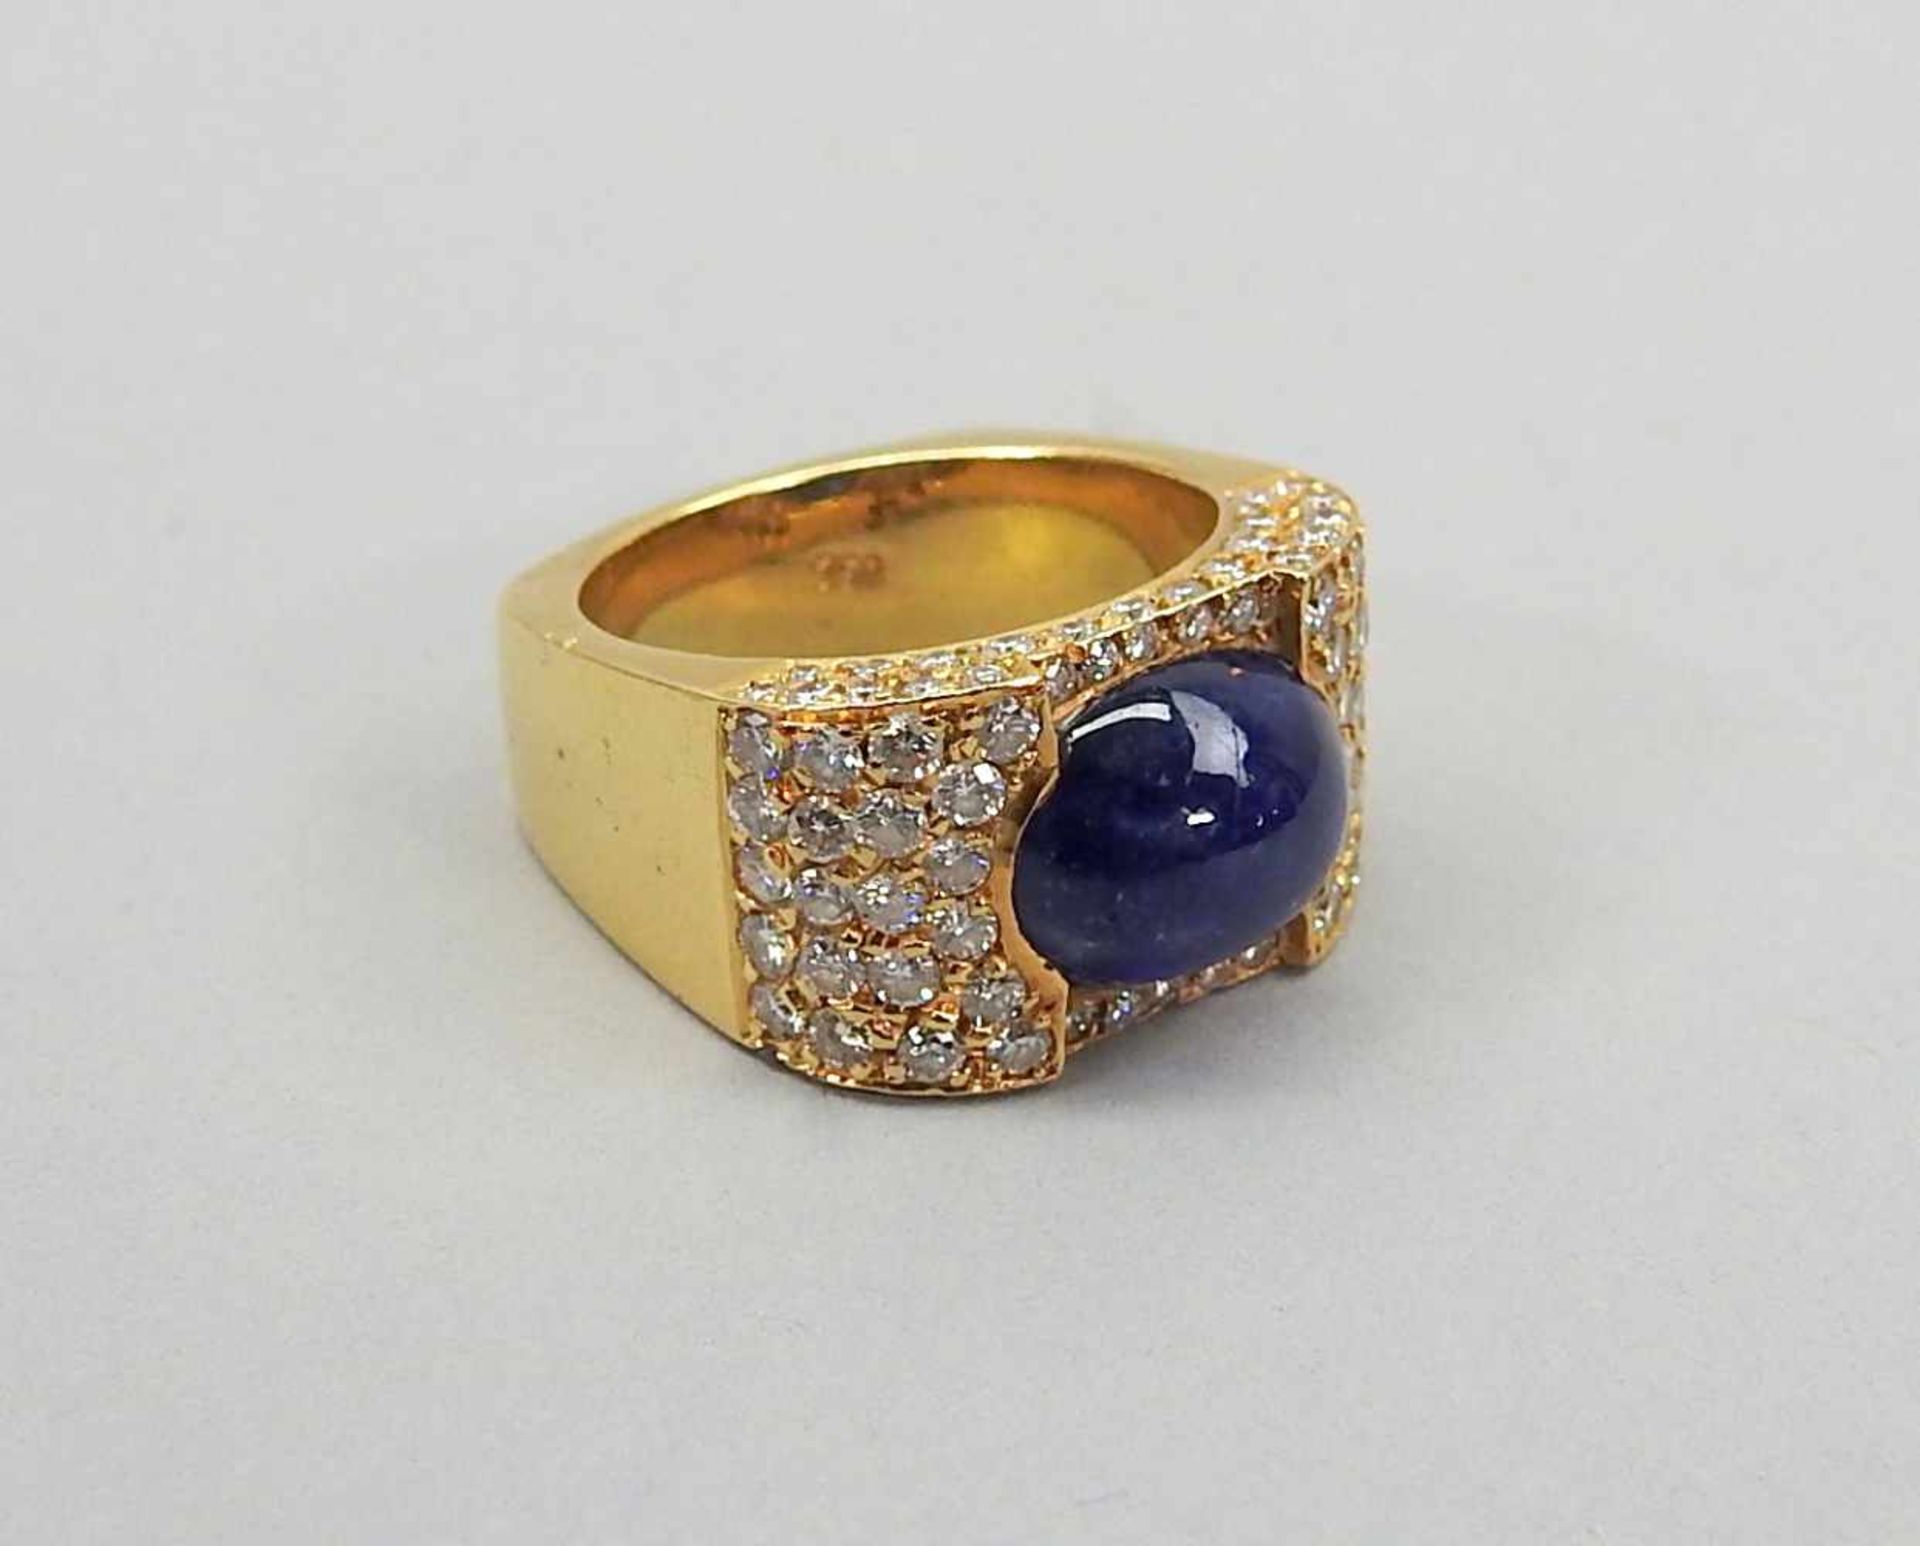 Saphir-Diamant-Ring mit Goldfassung18 K. Gelbgold mit zentralem Saphir-Cabochon 2 ct. und - Image 3 of 3